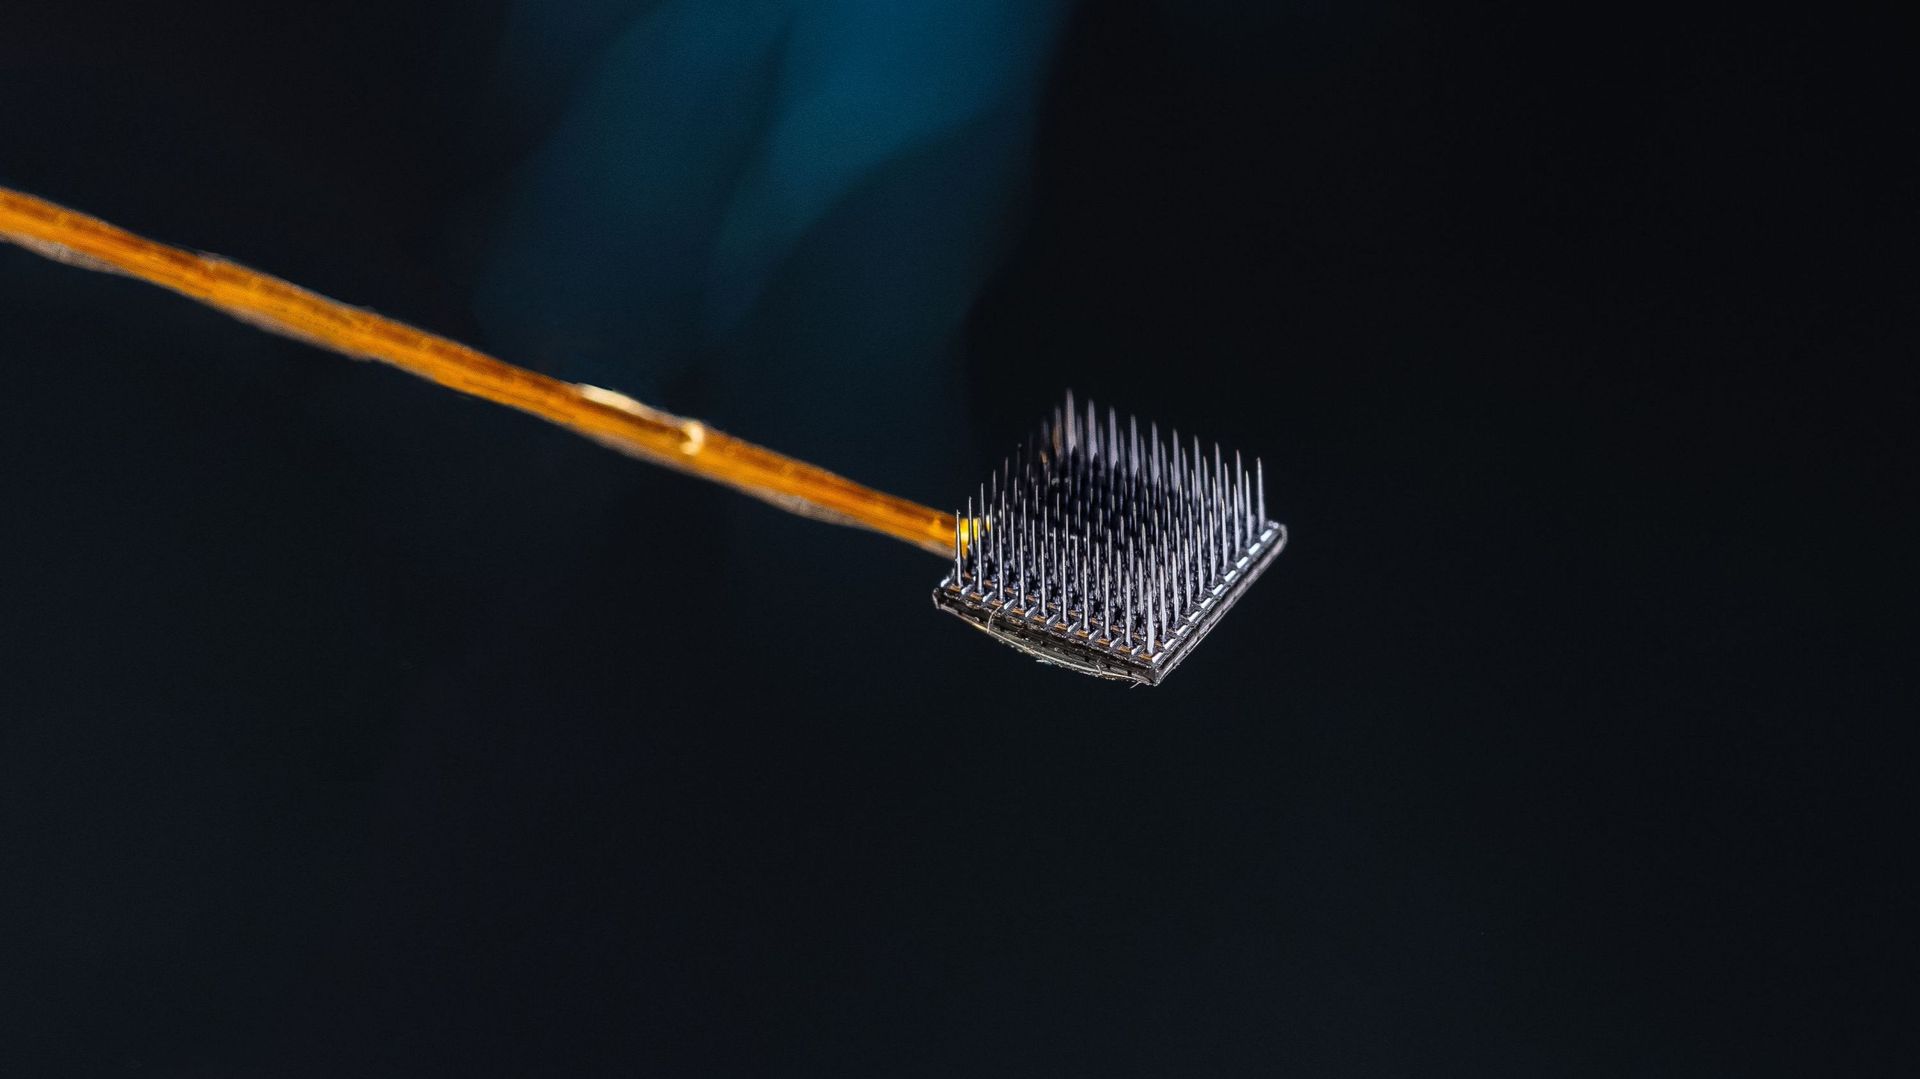 Deux réseaux de micro-électrodes, chacun de 3,2 mm carrés, ont été insérés dans la surface du cortex moteur – la partie du cerveau responsable du mouvement. Source : Wyss Center